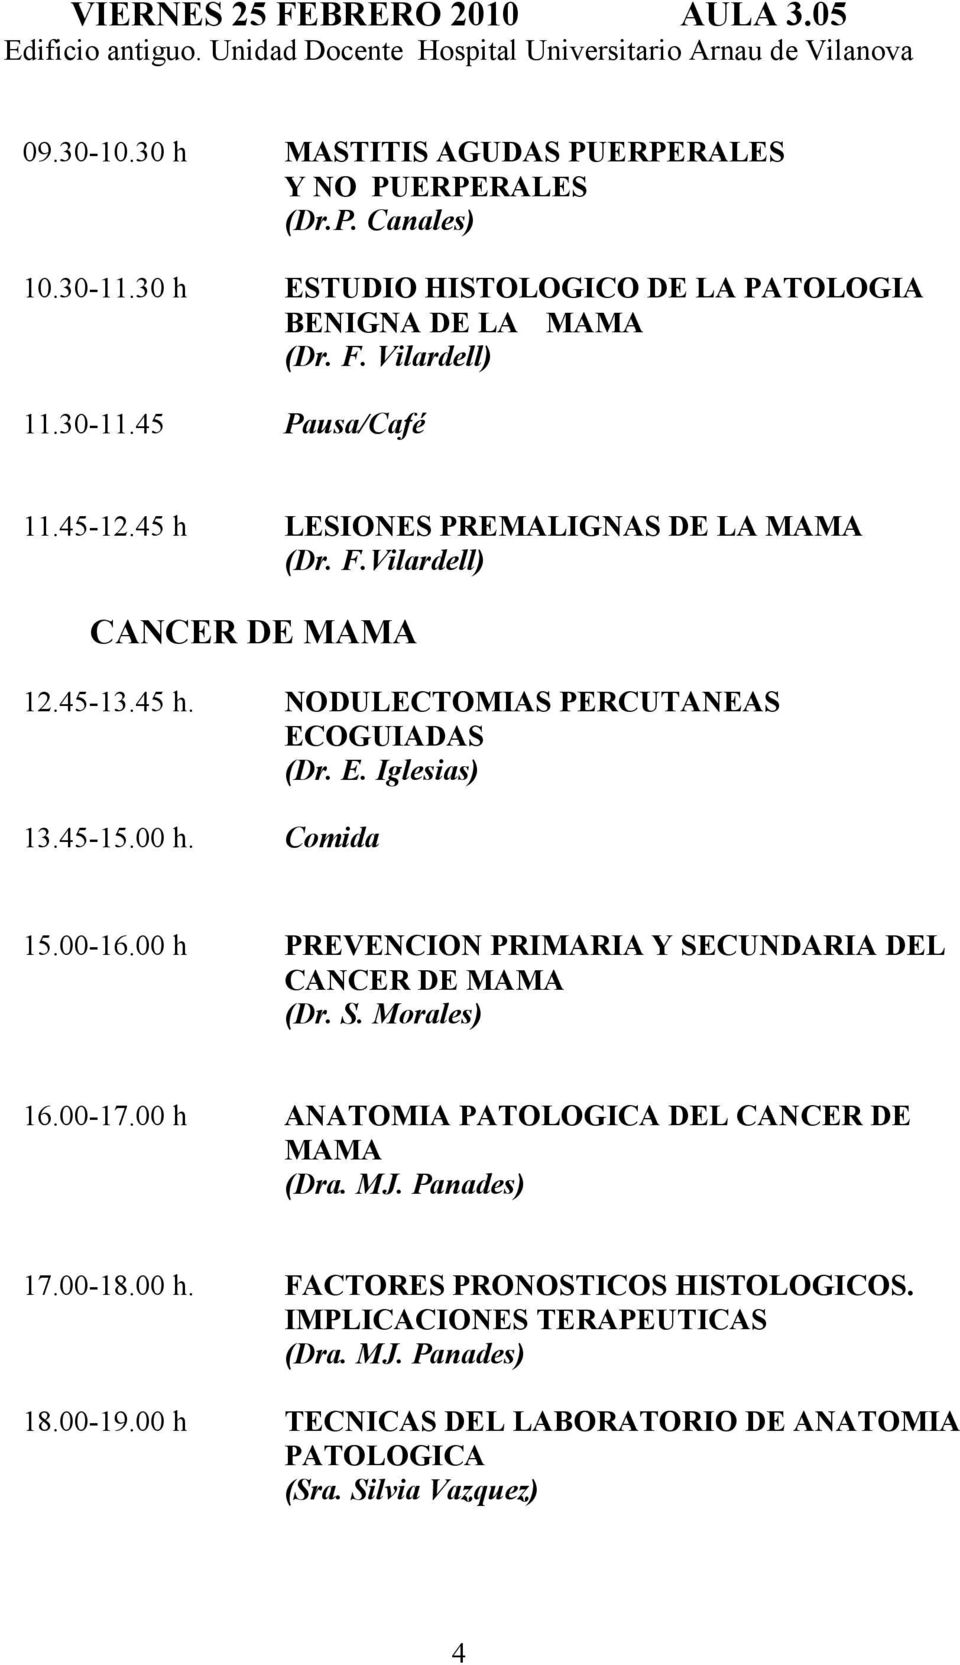 45-15.00 h. Comida 15.00-16.00 h PREVENCION PRIMARIA Y SECUNDARIA DEL CANCER DE MAMA (Dr. S. Morales) 16.00-17.00 h ANATOMIA PATOLOGICA DEL CANCER DE MAMA (Dra. MJ. Panades) 17.